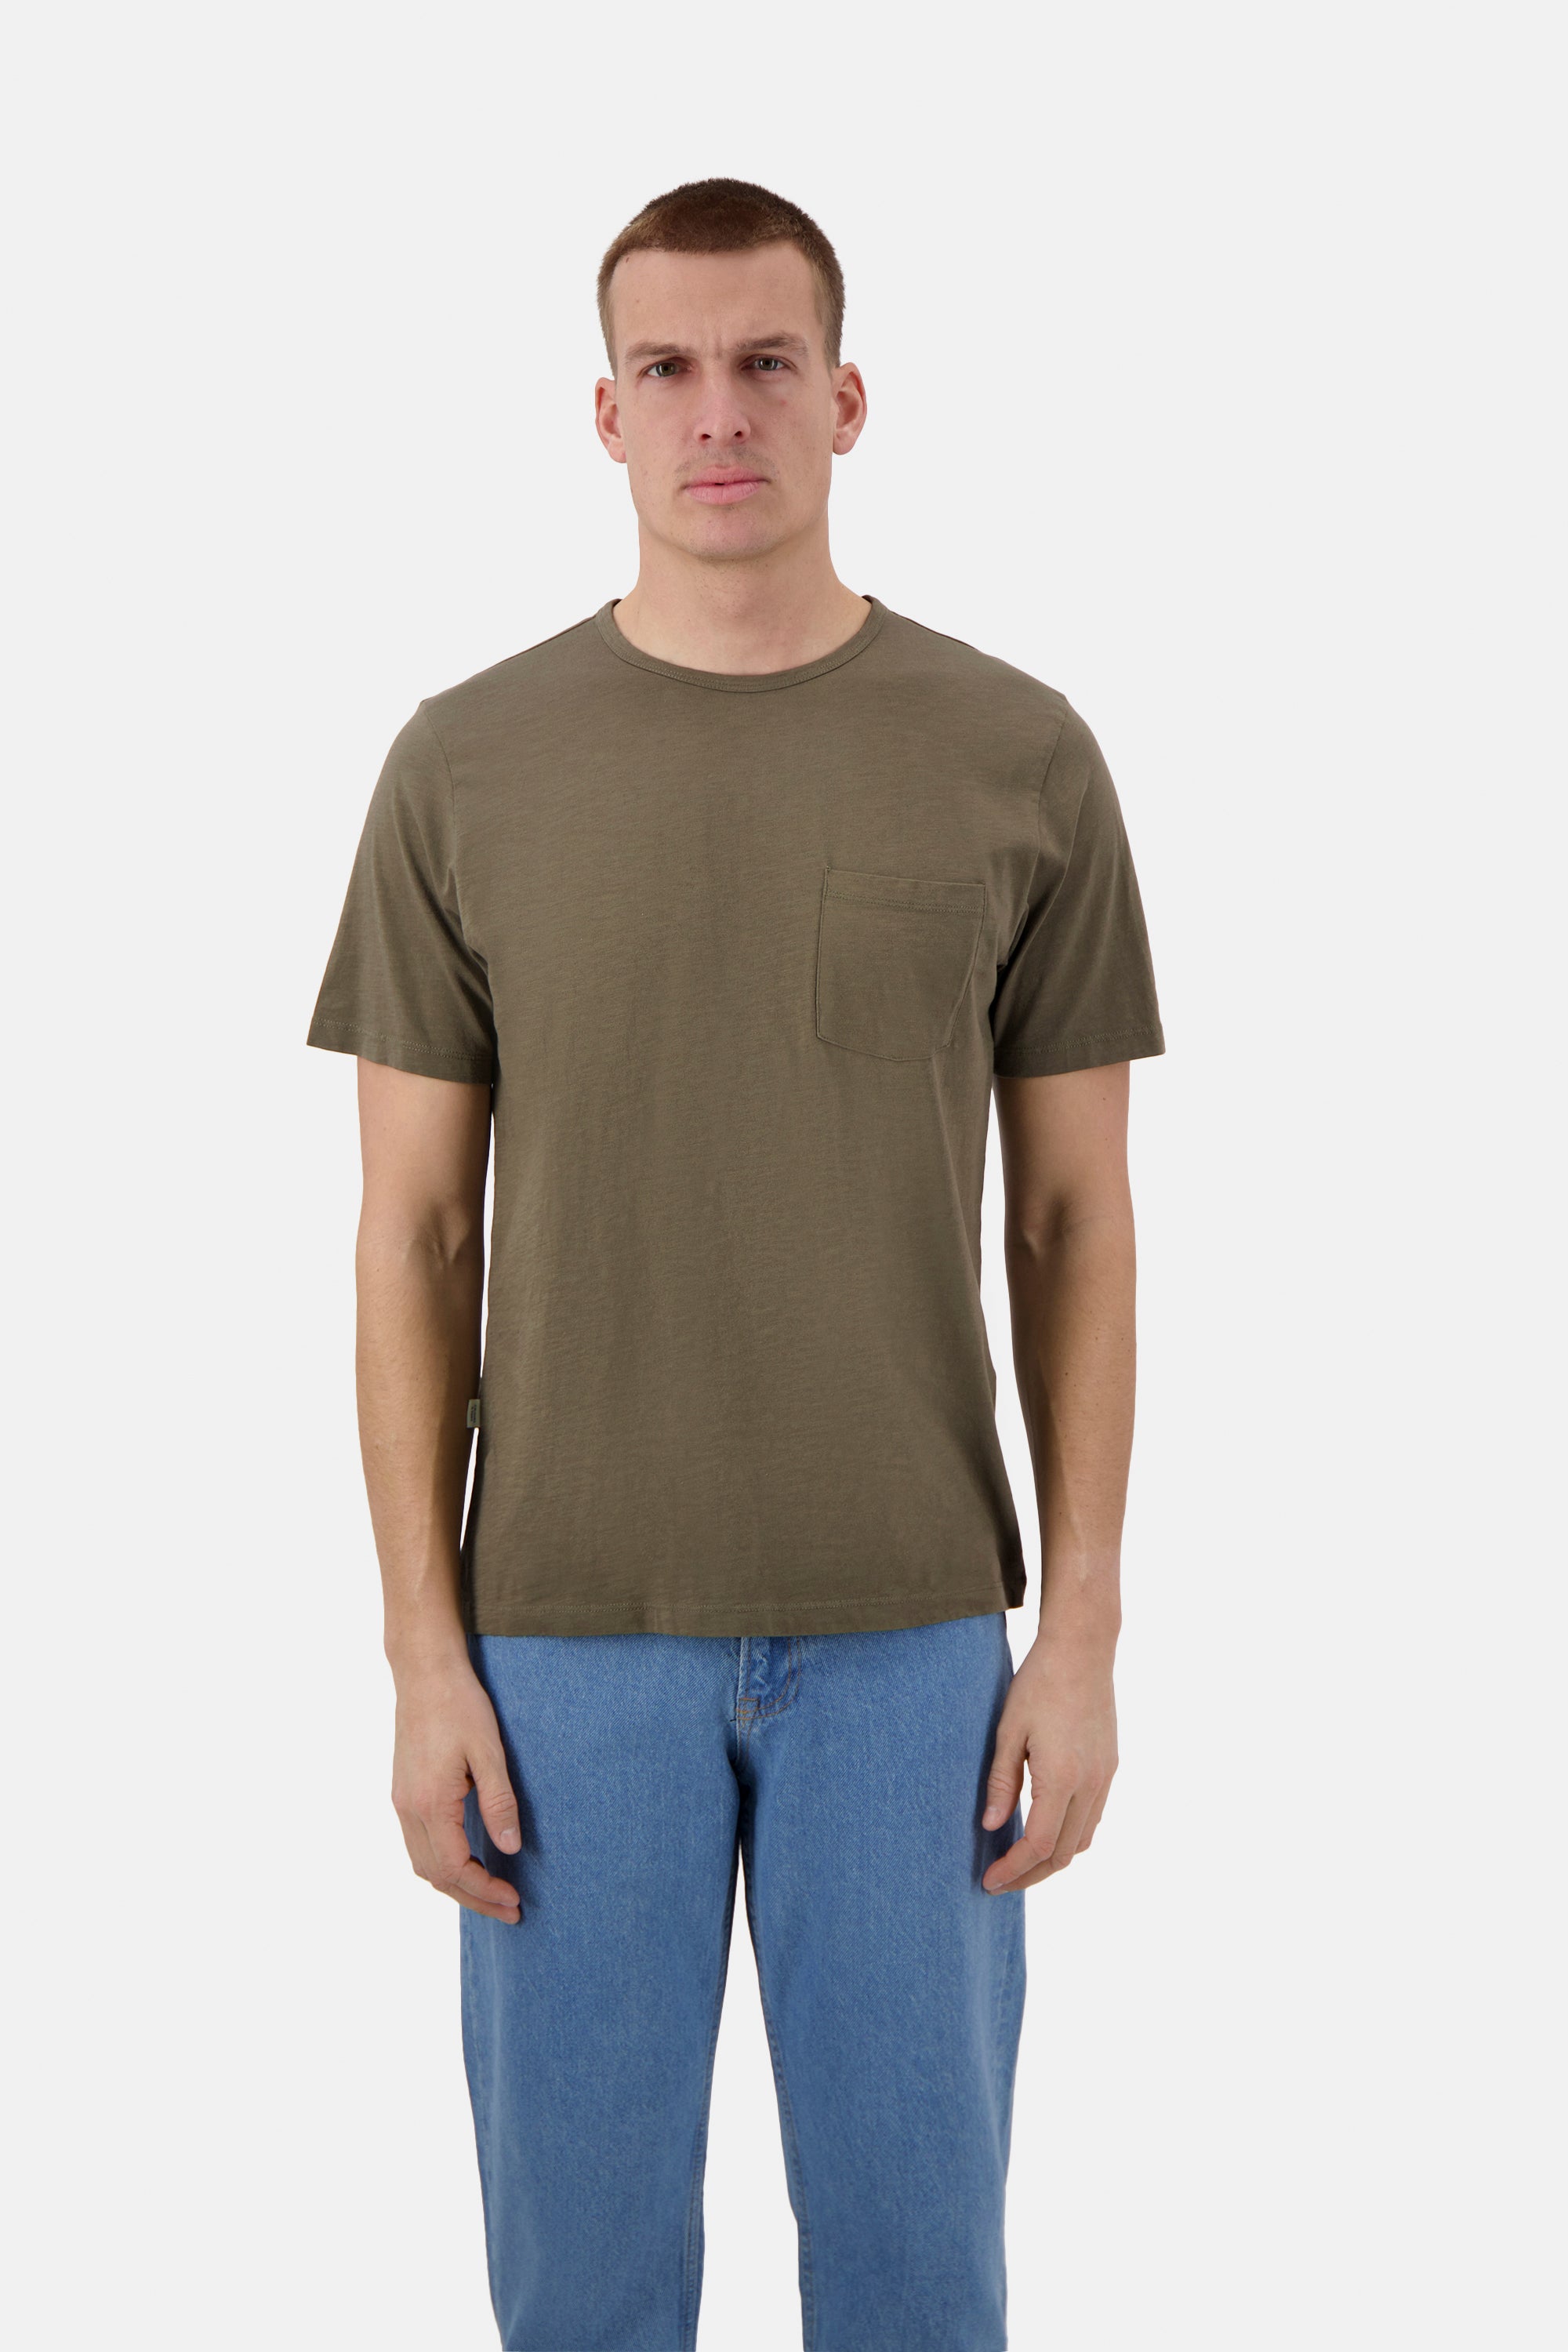 Herren T-Shirt, oliv, 100% Baumwolle von Colours & Sons